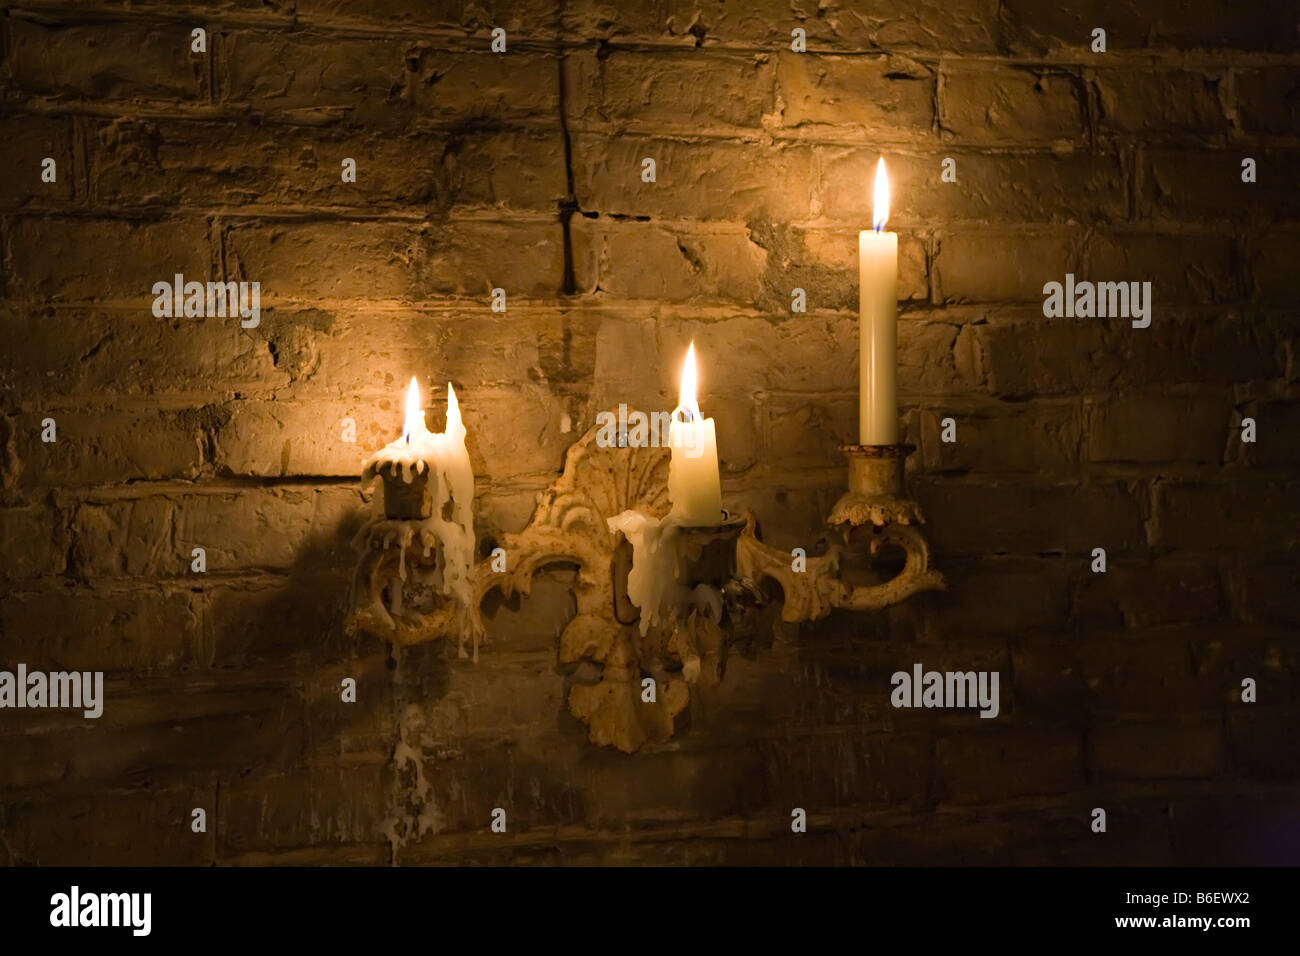 Des bougies allumées dans le vieux chandelier fixé sur mur Banque D'Images